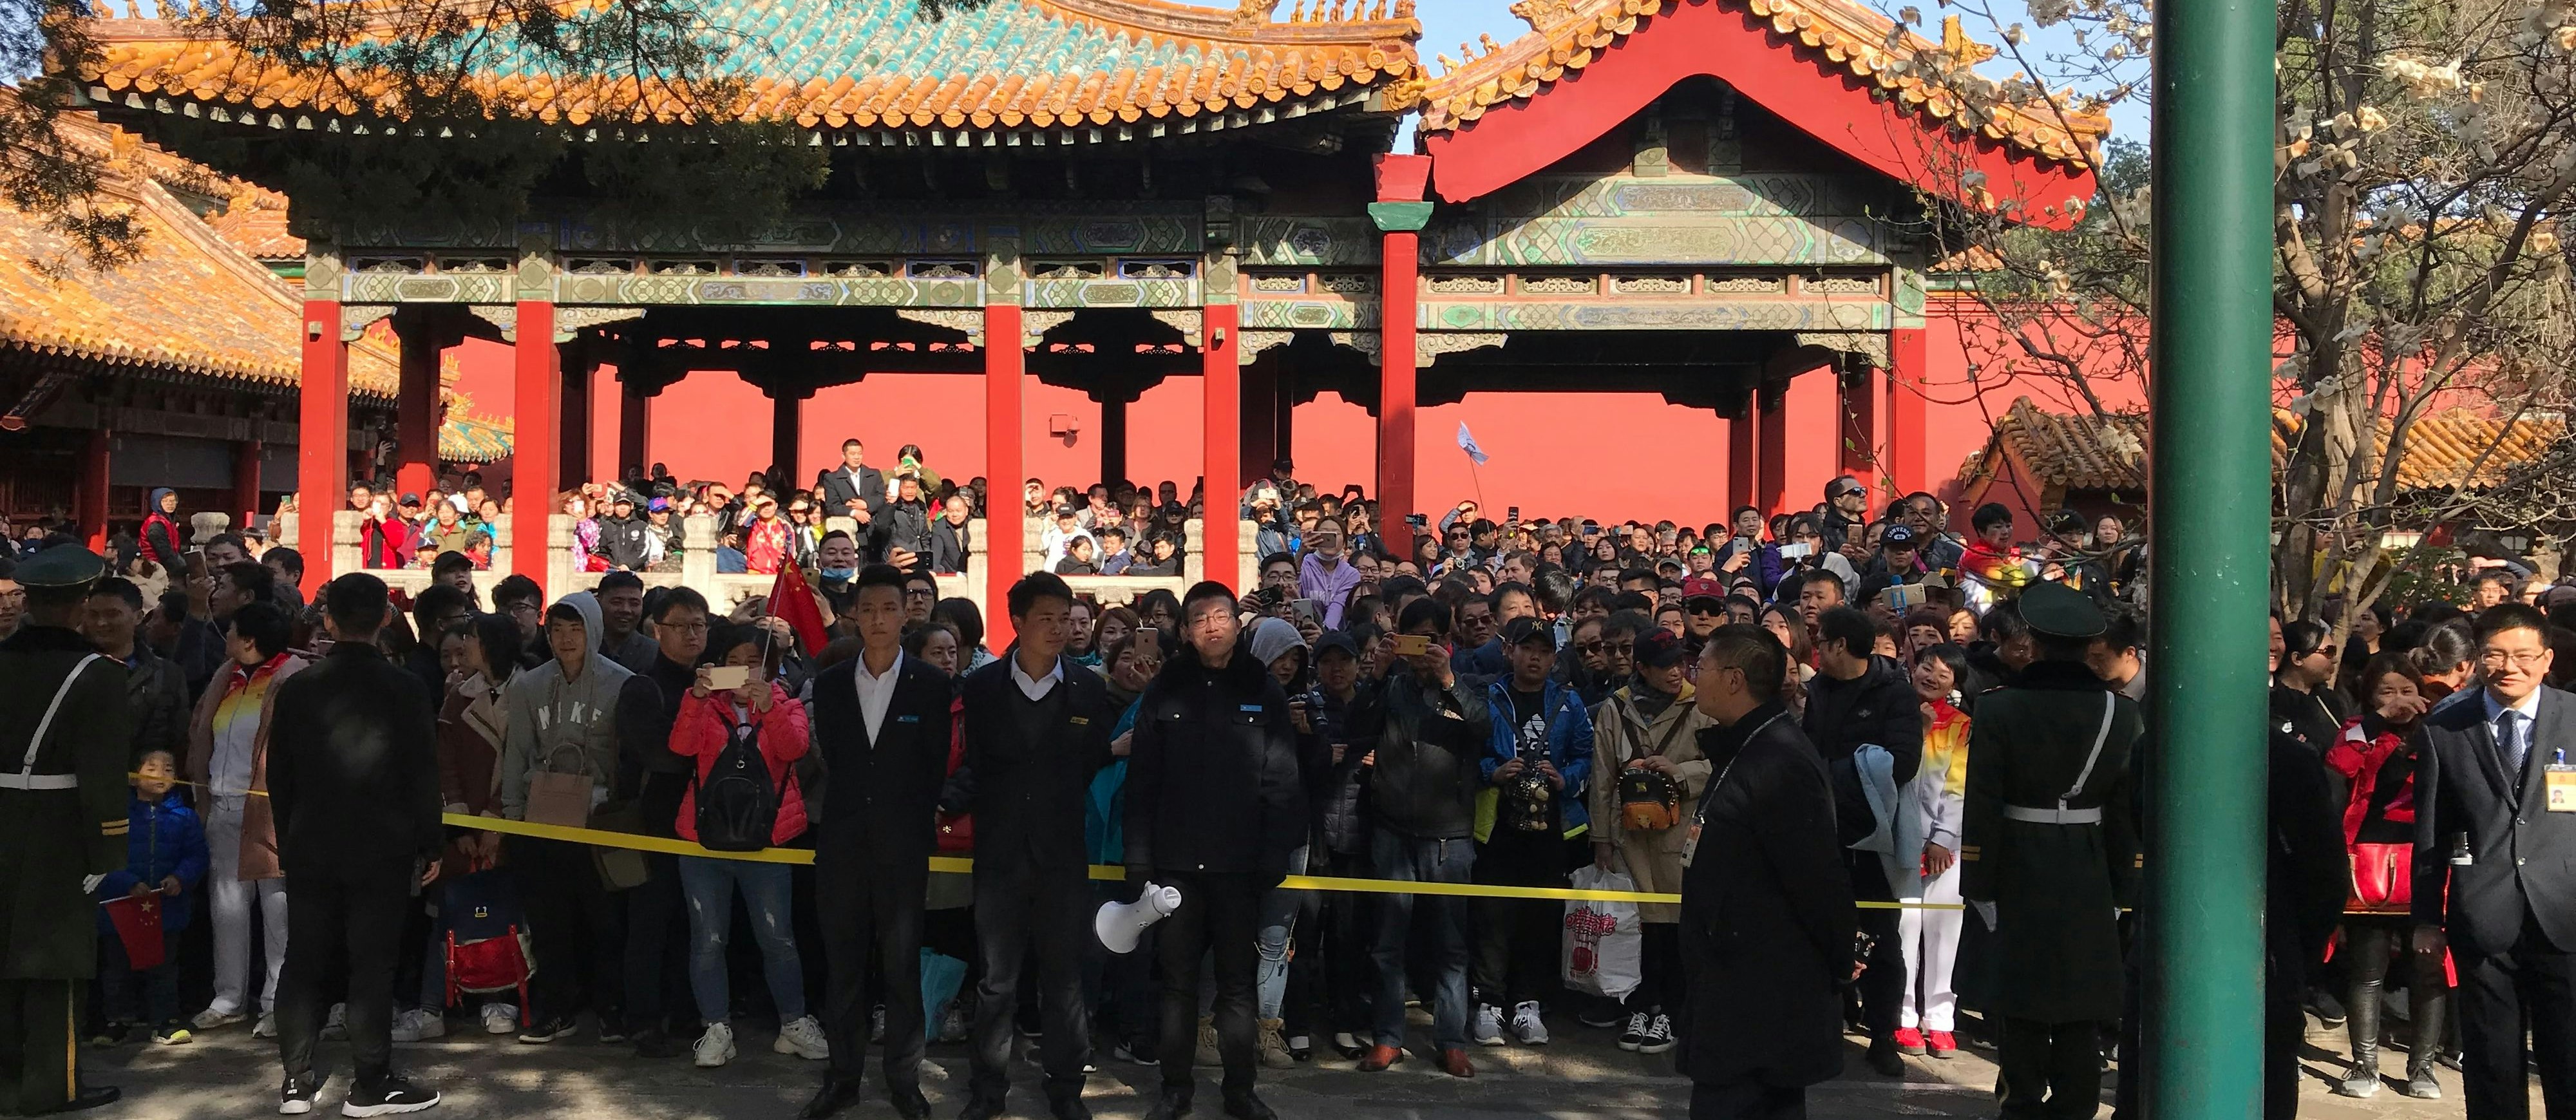 Besucher müssen warten: Die größte Delegation aller Zeiten besucht die Verbotene Stadt in Peking am 7. April 2018